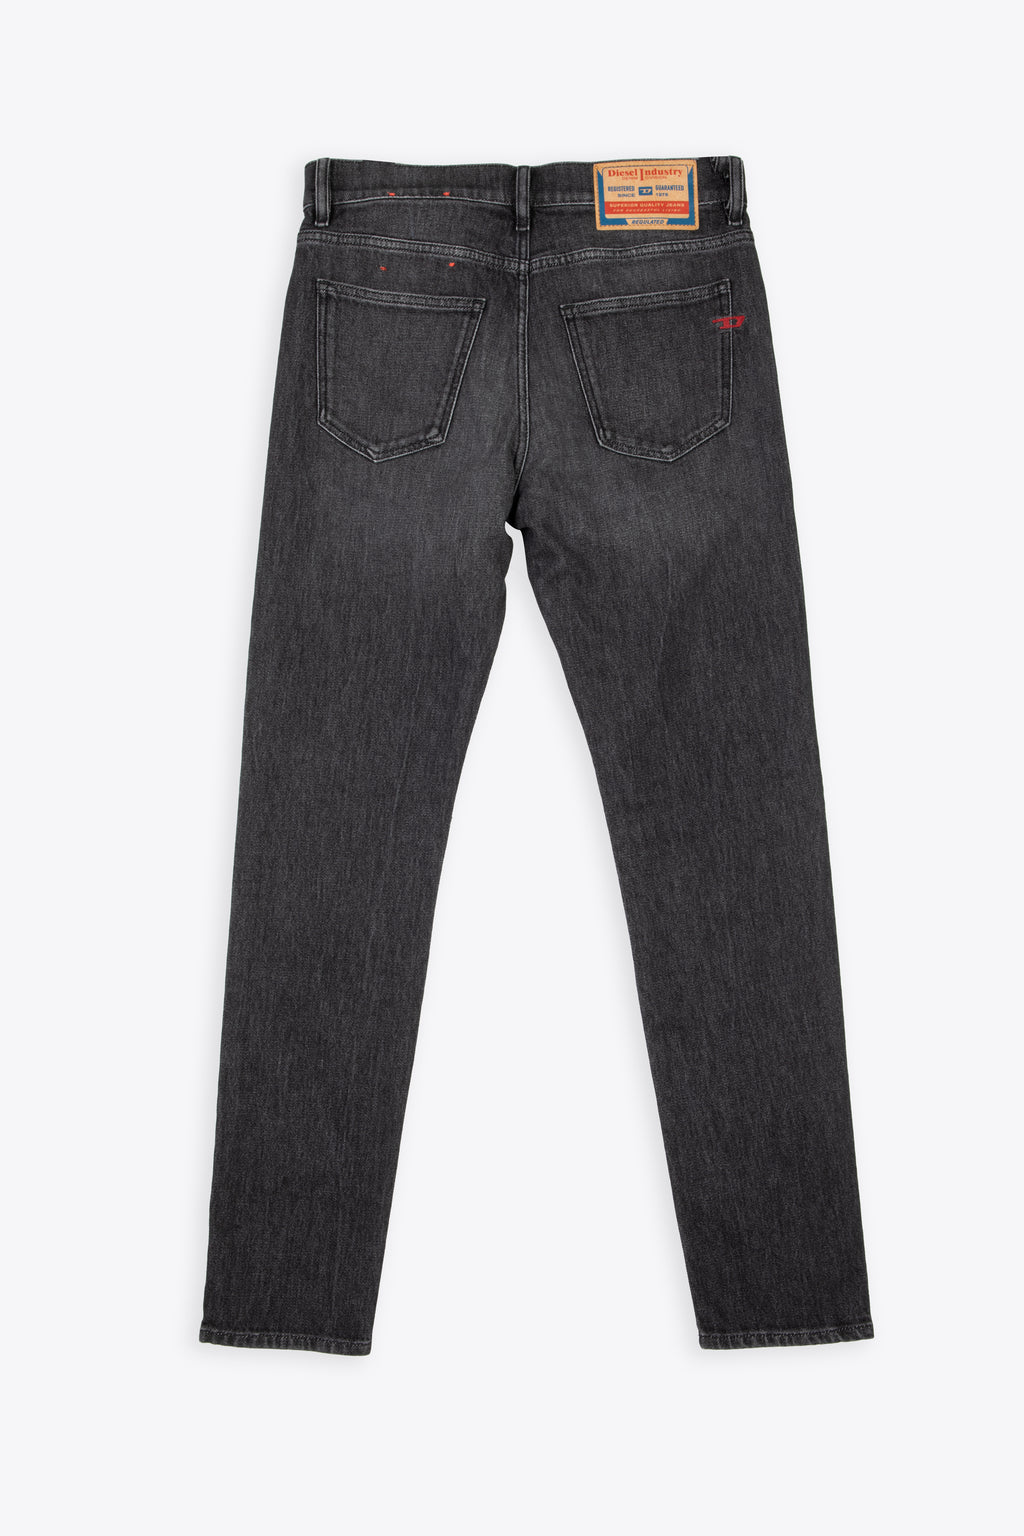 alt-image__Grey-slim-fit-jeans---D-strukt